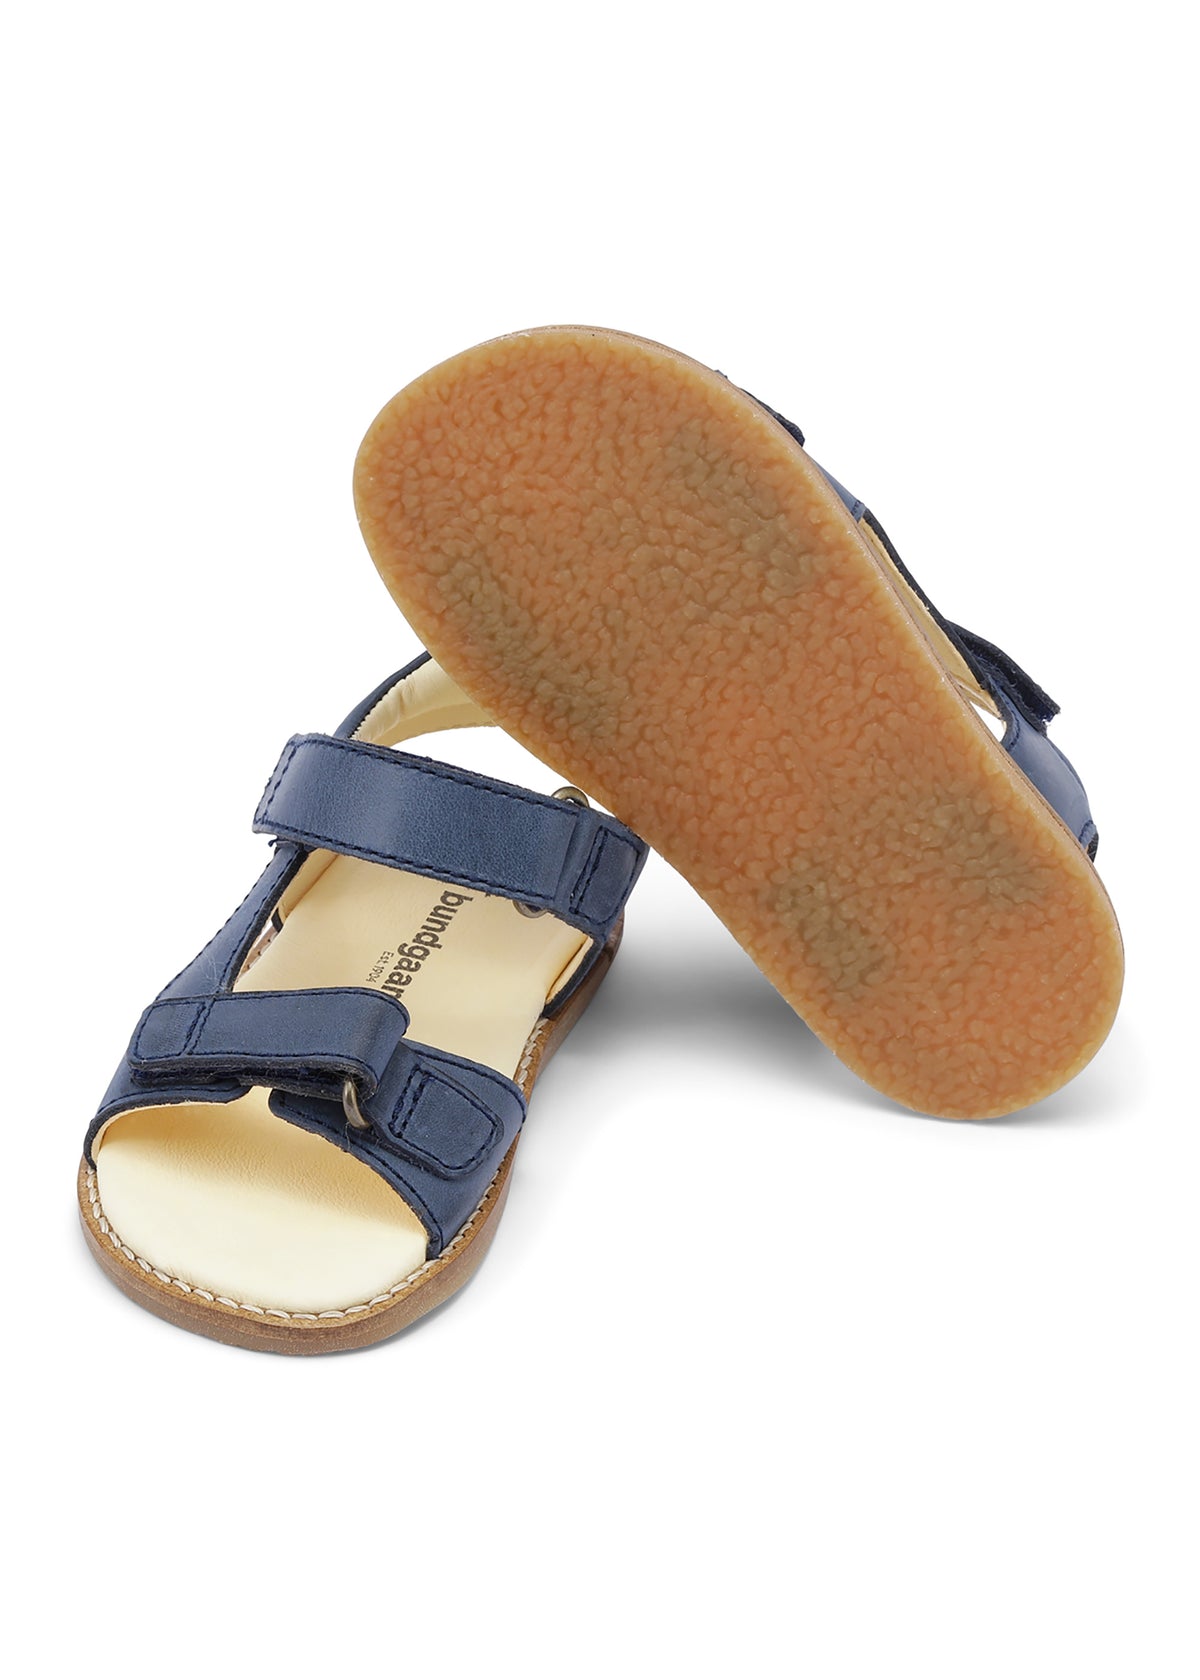 Children's sandals - Sigurd, dark blue, Bundgaard Zero Heel